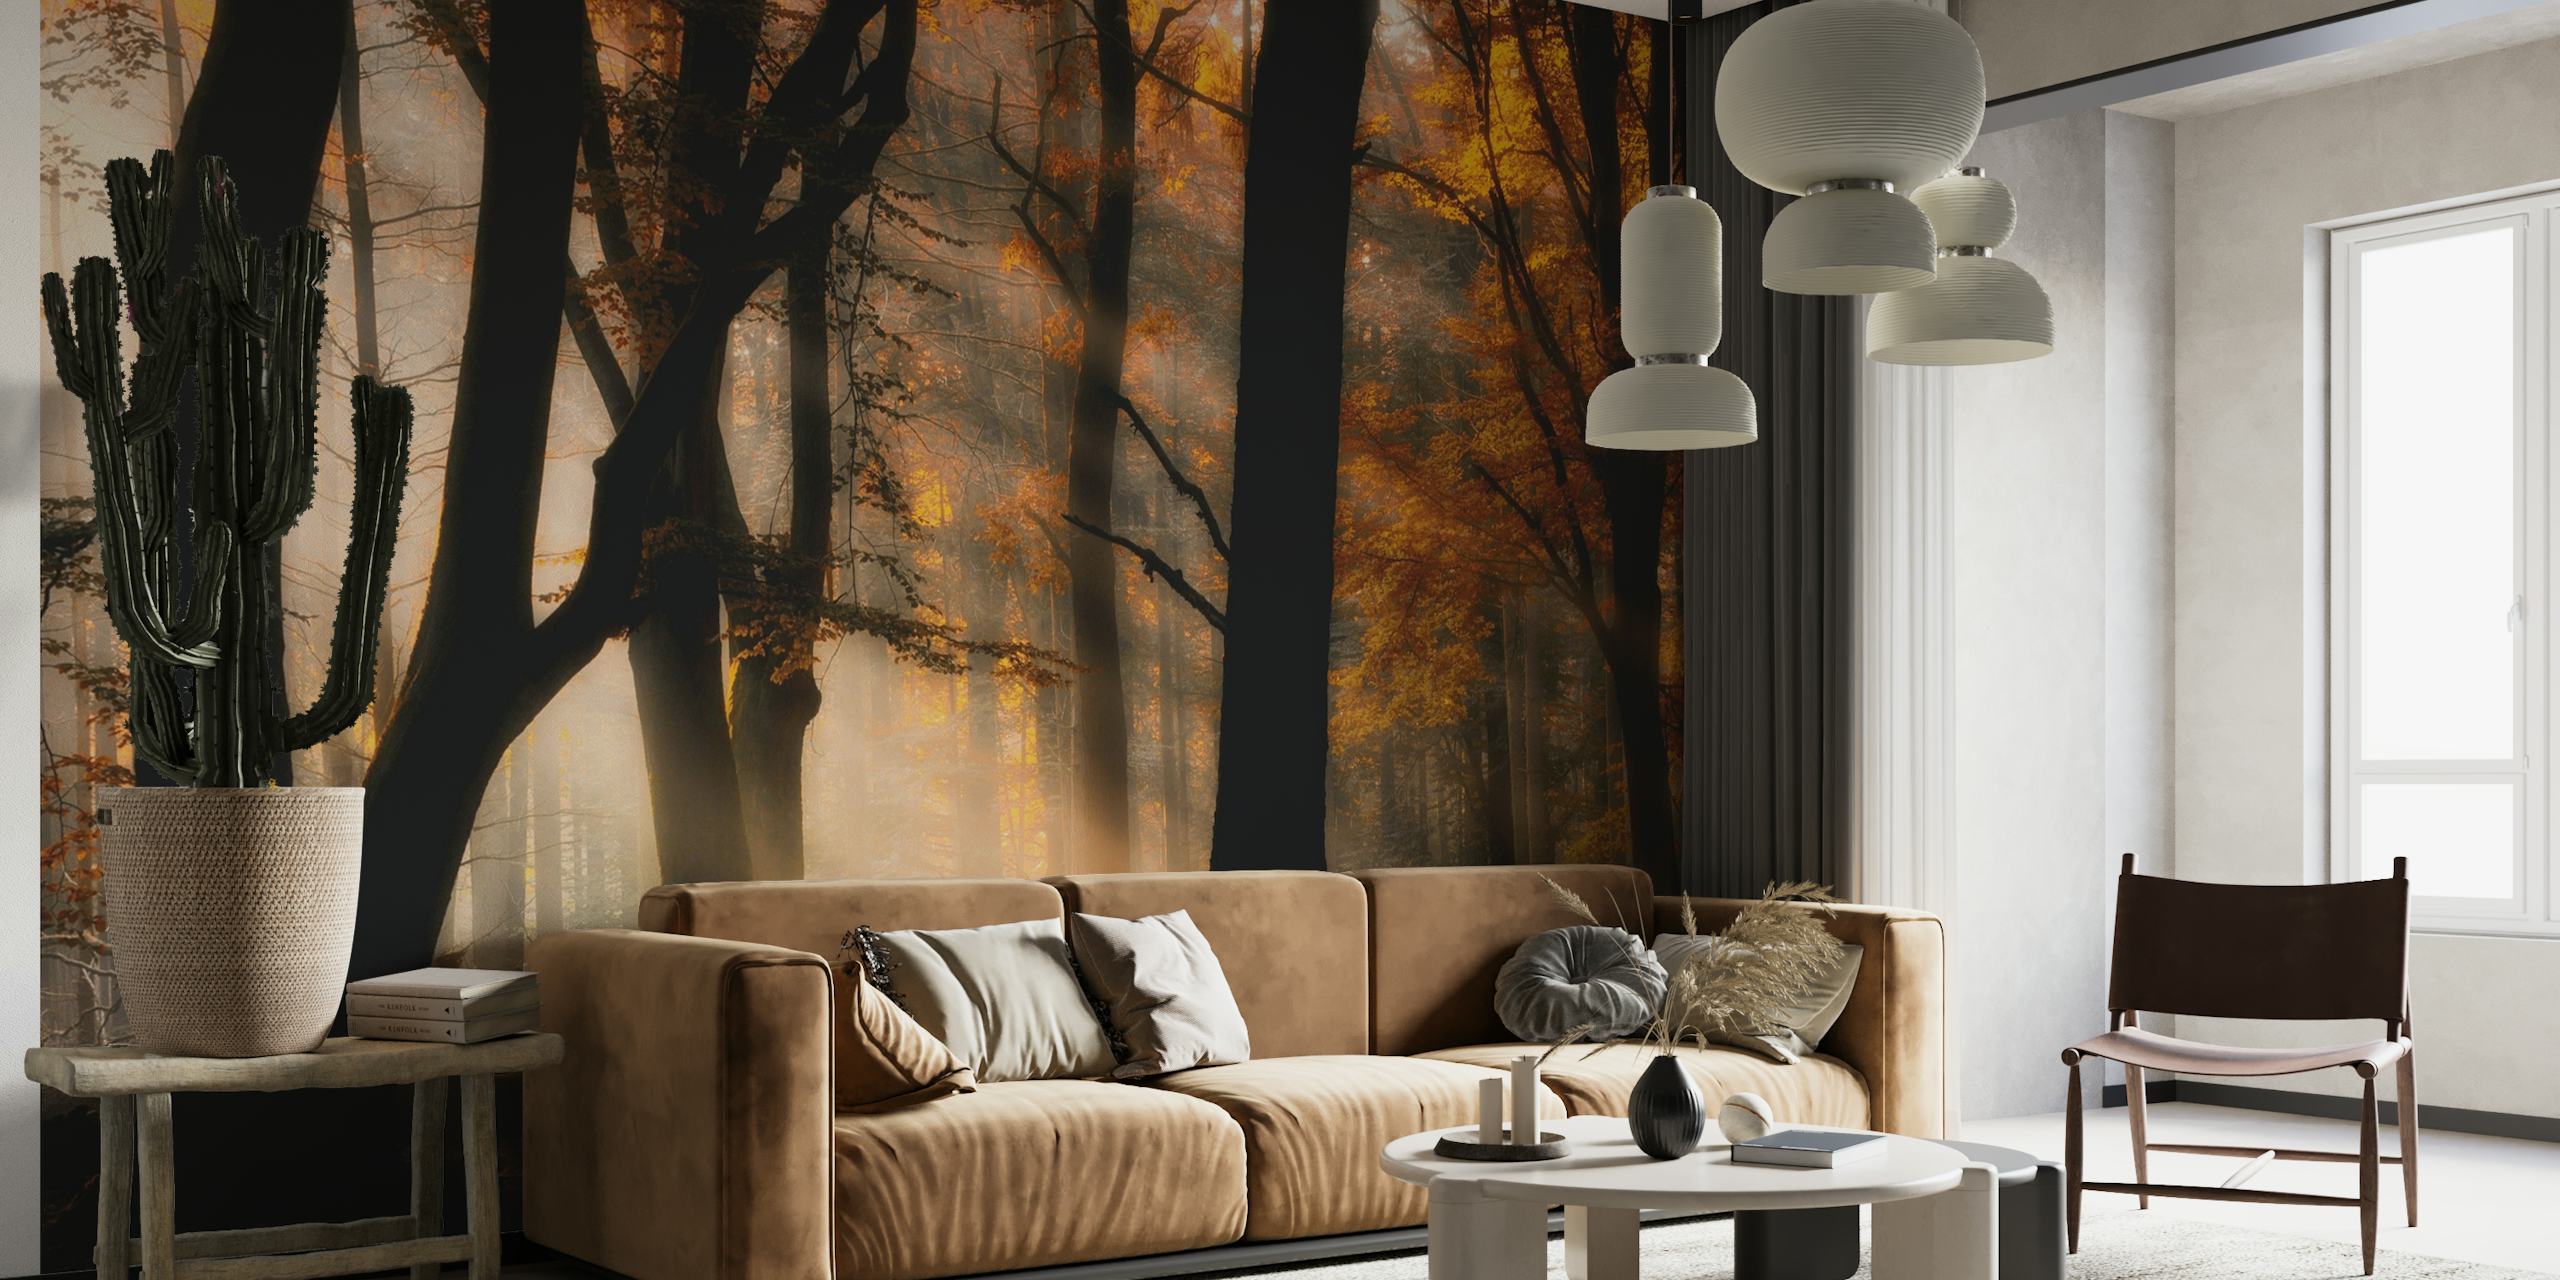 Herfstbosscène muurschildering met zonlicht dat door bomen filtert